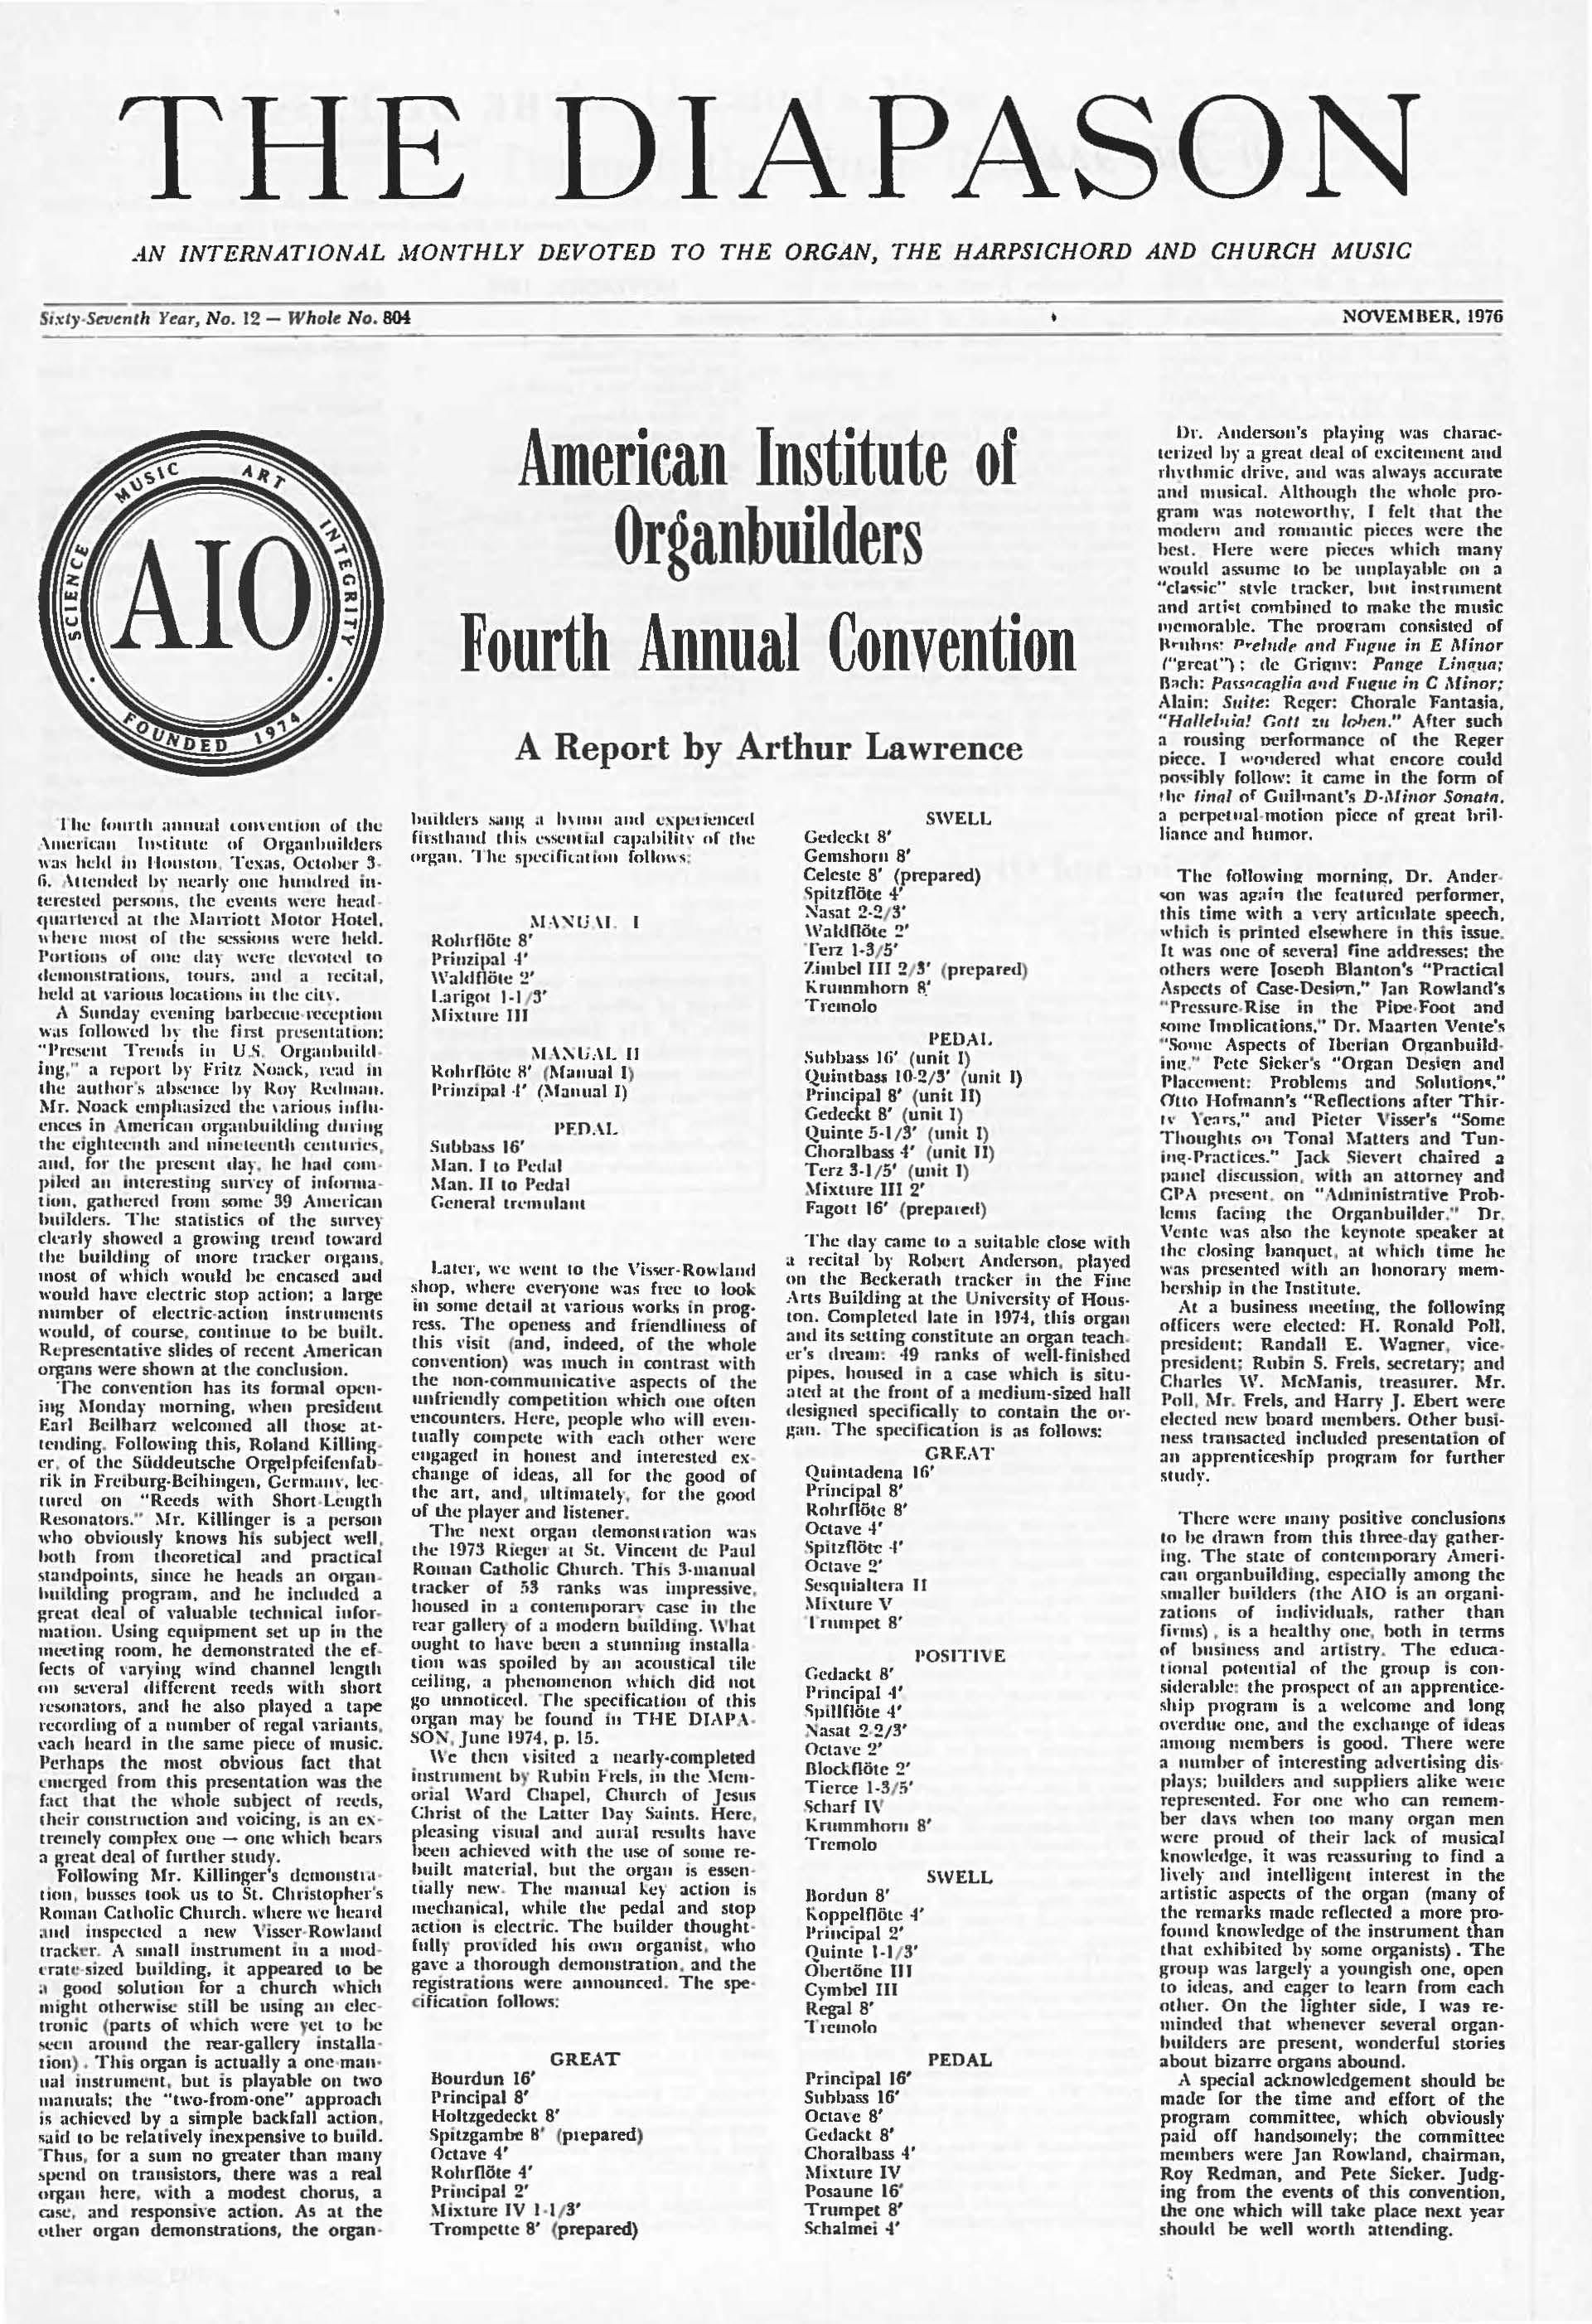 November 1976 Full Issue PDF